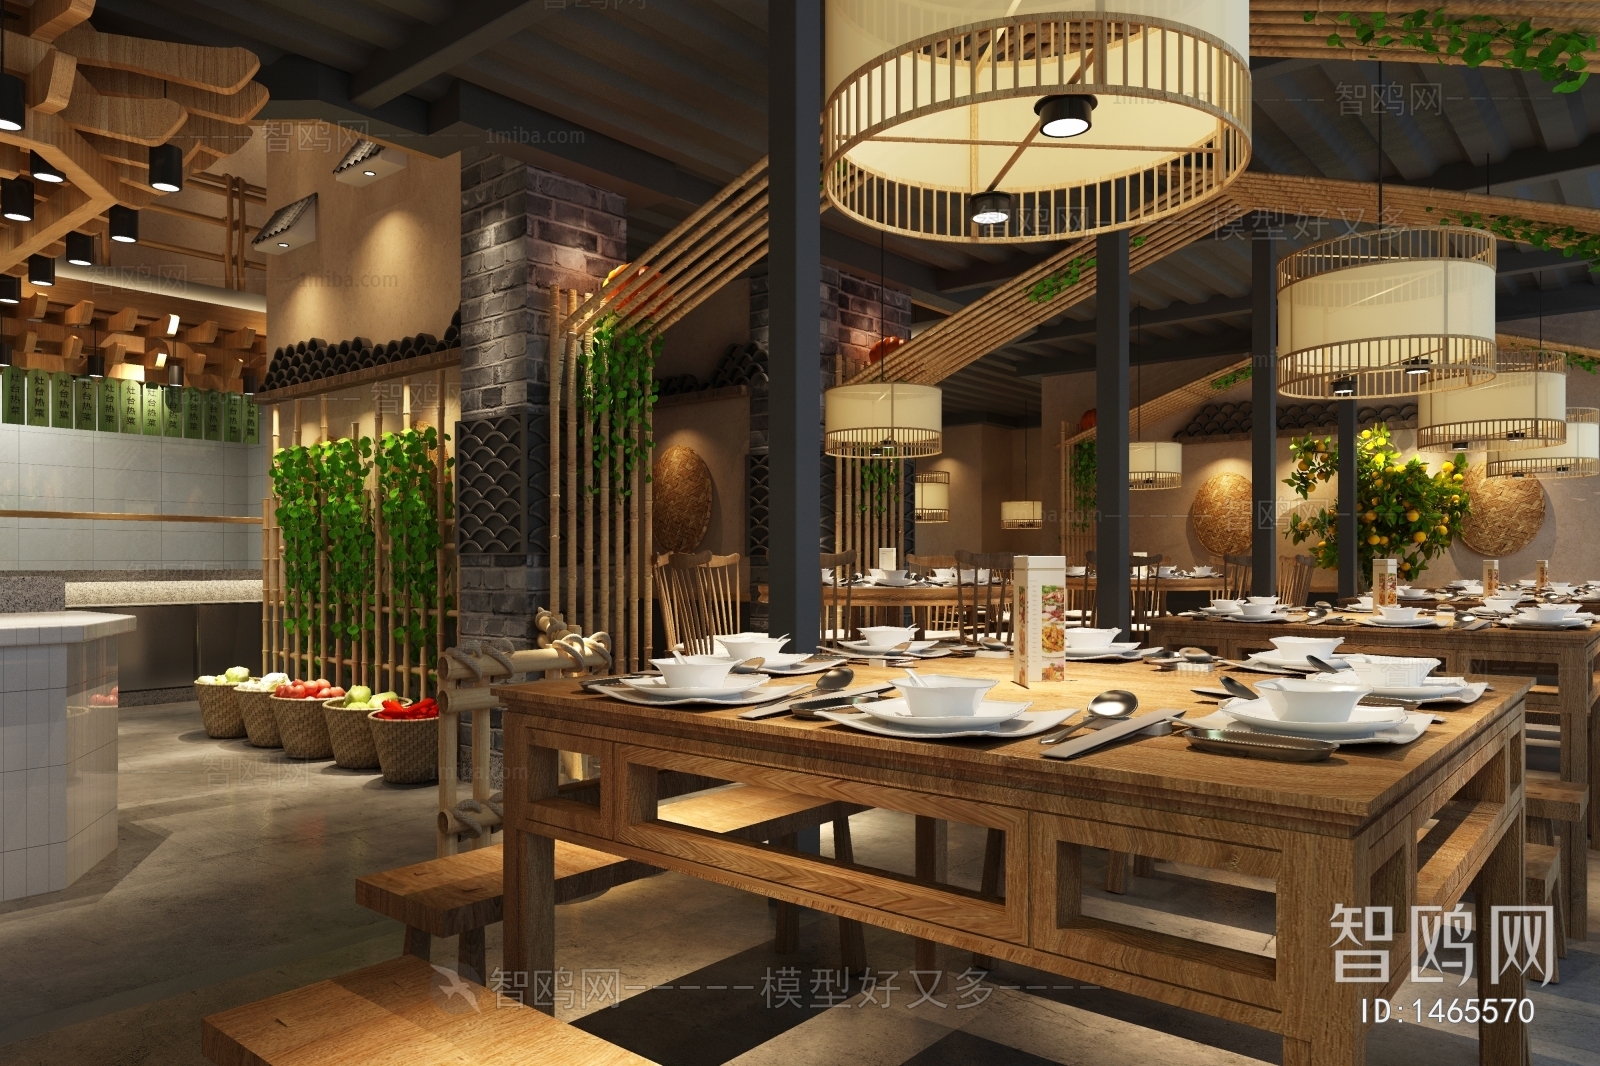 Idyllic Style New Chinese Style Restaurant